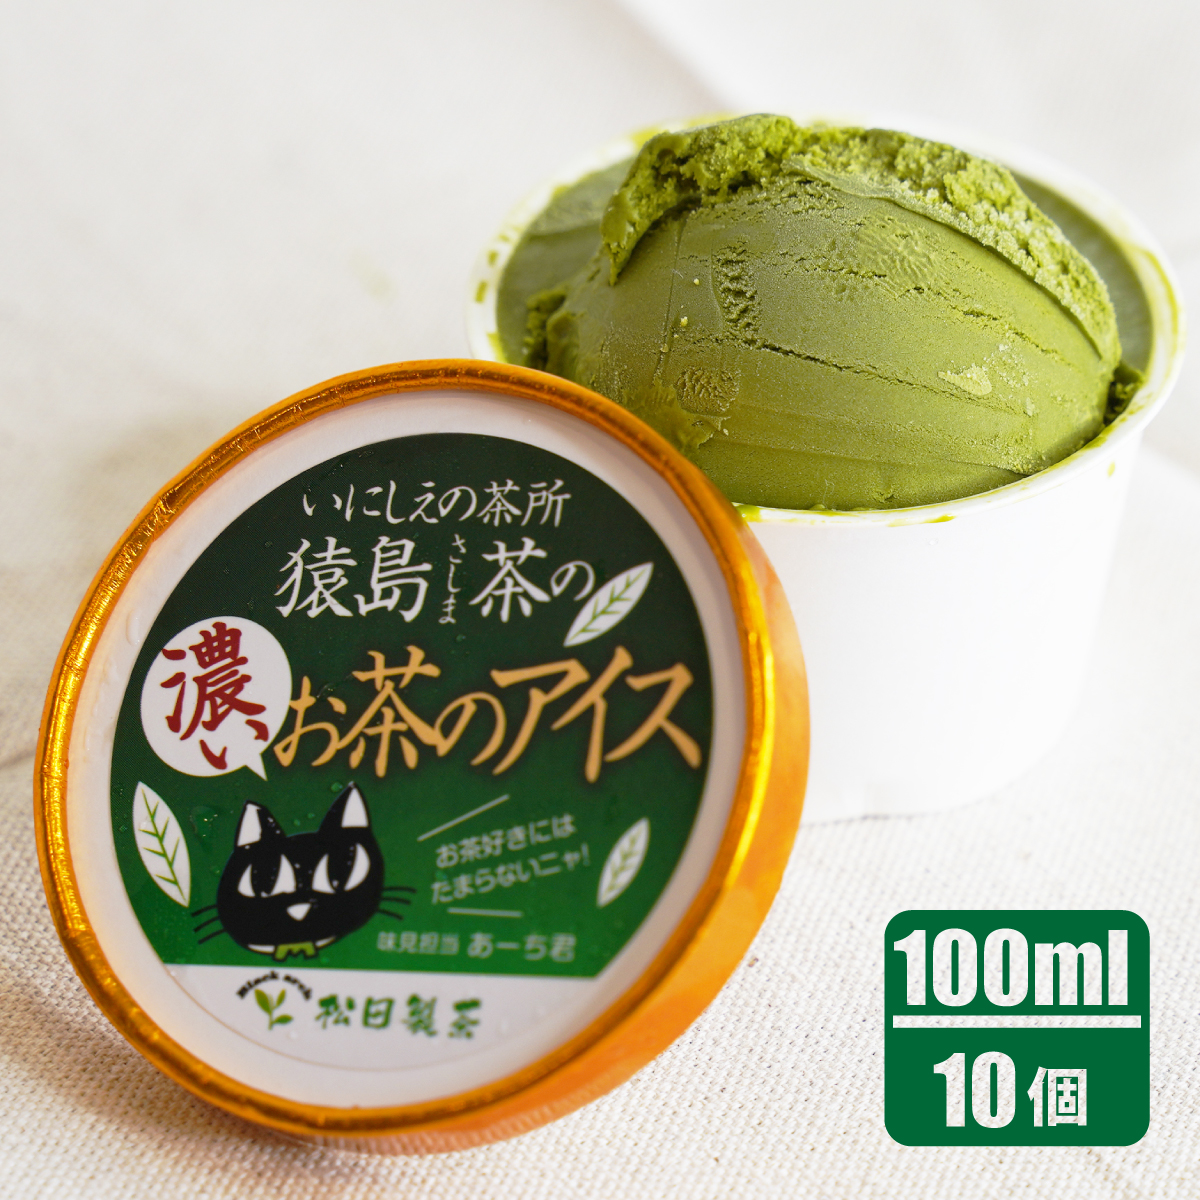 猿島茶の濃いお茶のアイス/100ml(10個)